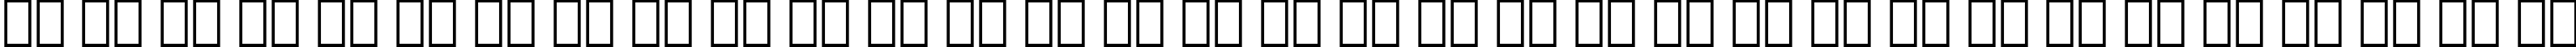 Пример написания русского алфавита шрифтом Transitional 521 Bold BT